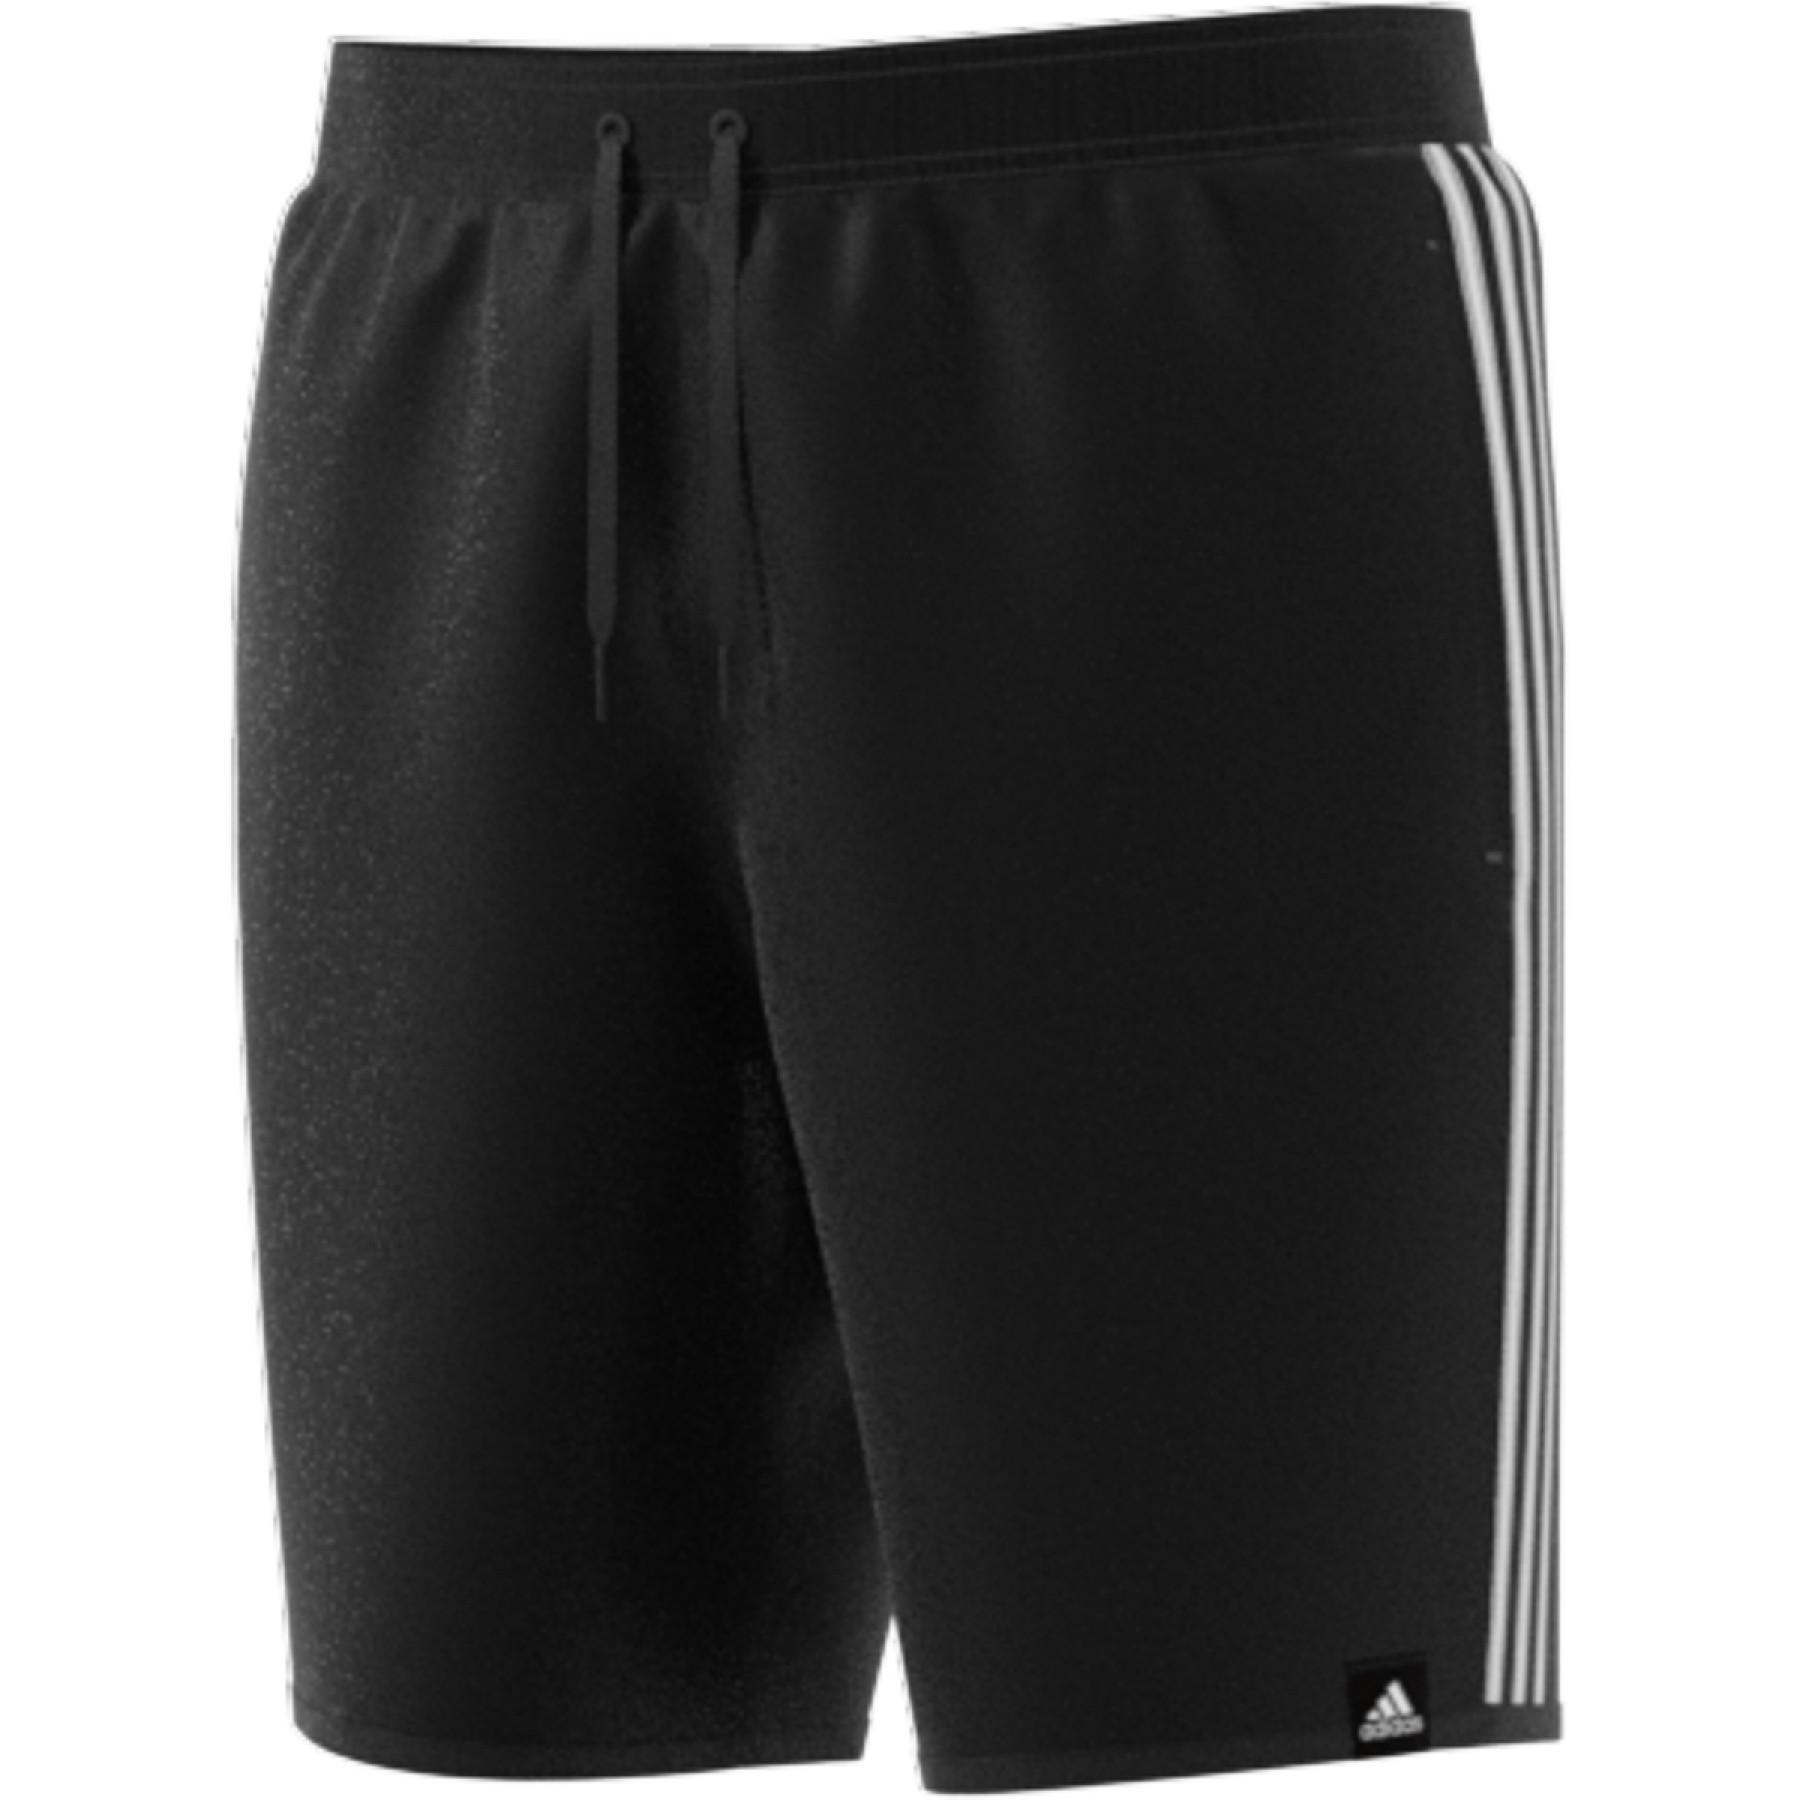 Swimming shorts adidas Length 3-Bandes